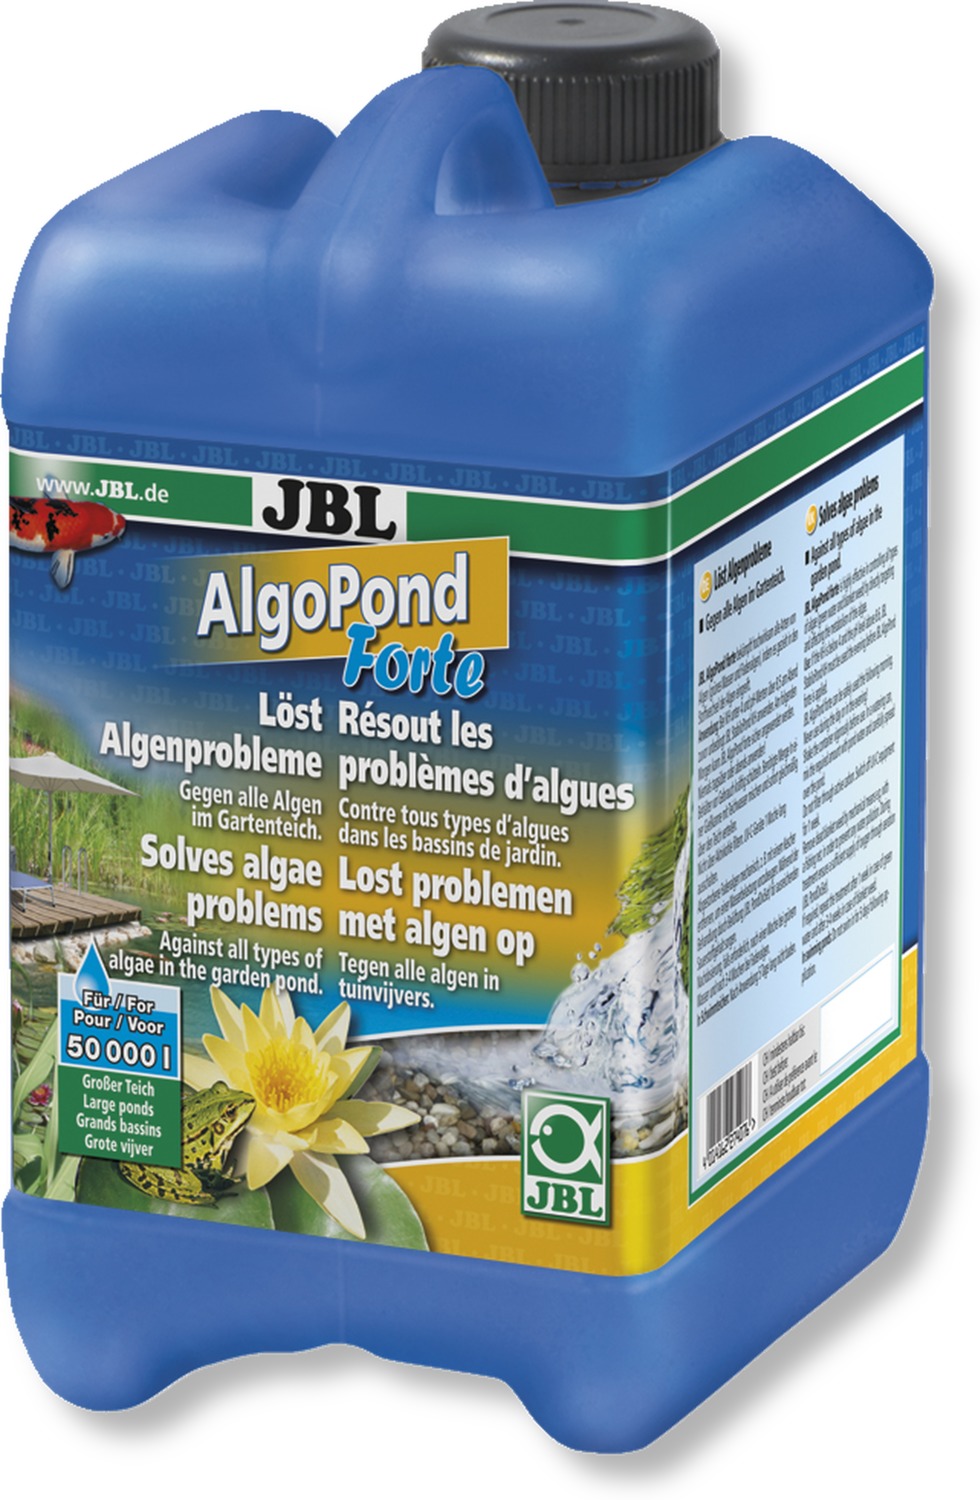 JBL AlgoPond Forte solutie pentru iaz în caz de înflorire puternică a algelor